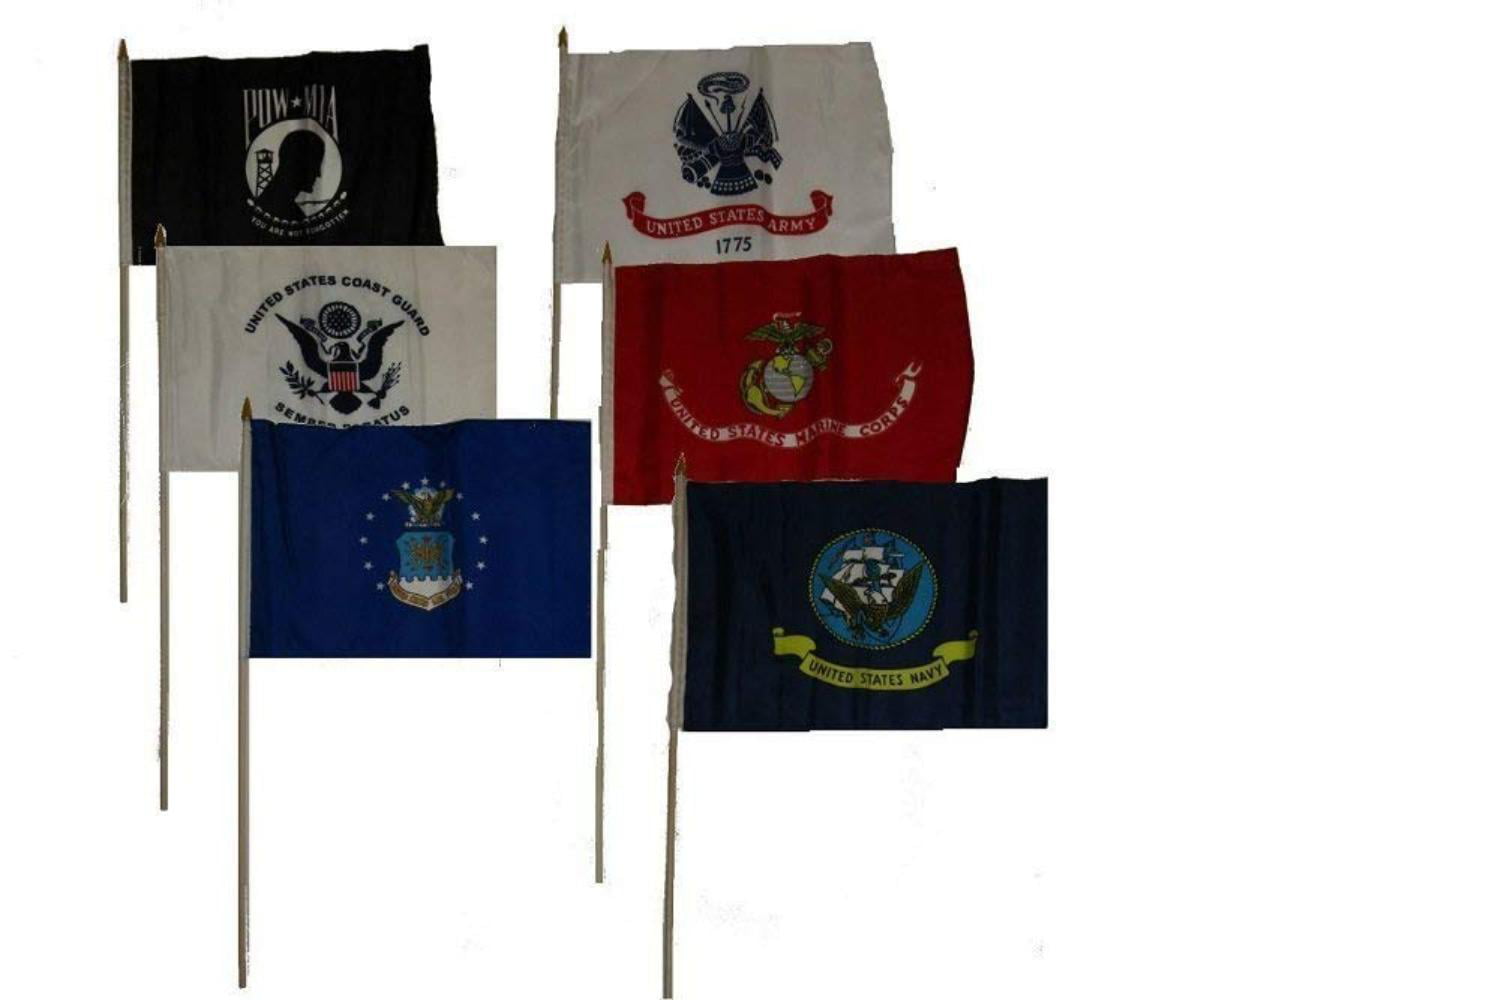 Super Polyester Coast Guard Stick Flag wood staff 12x18 12"x18"  U.S